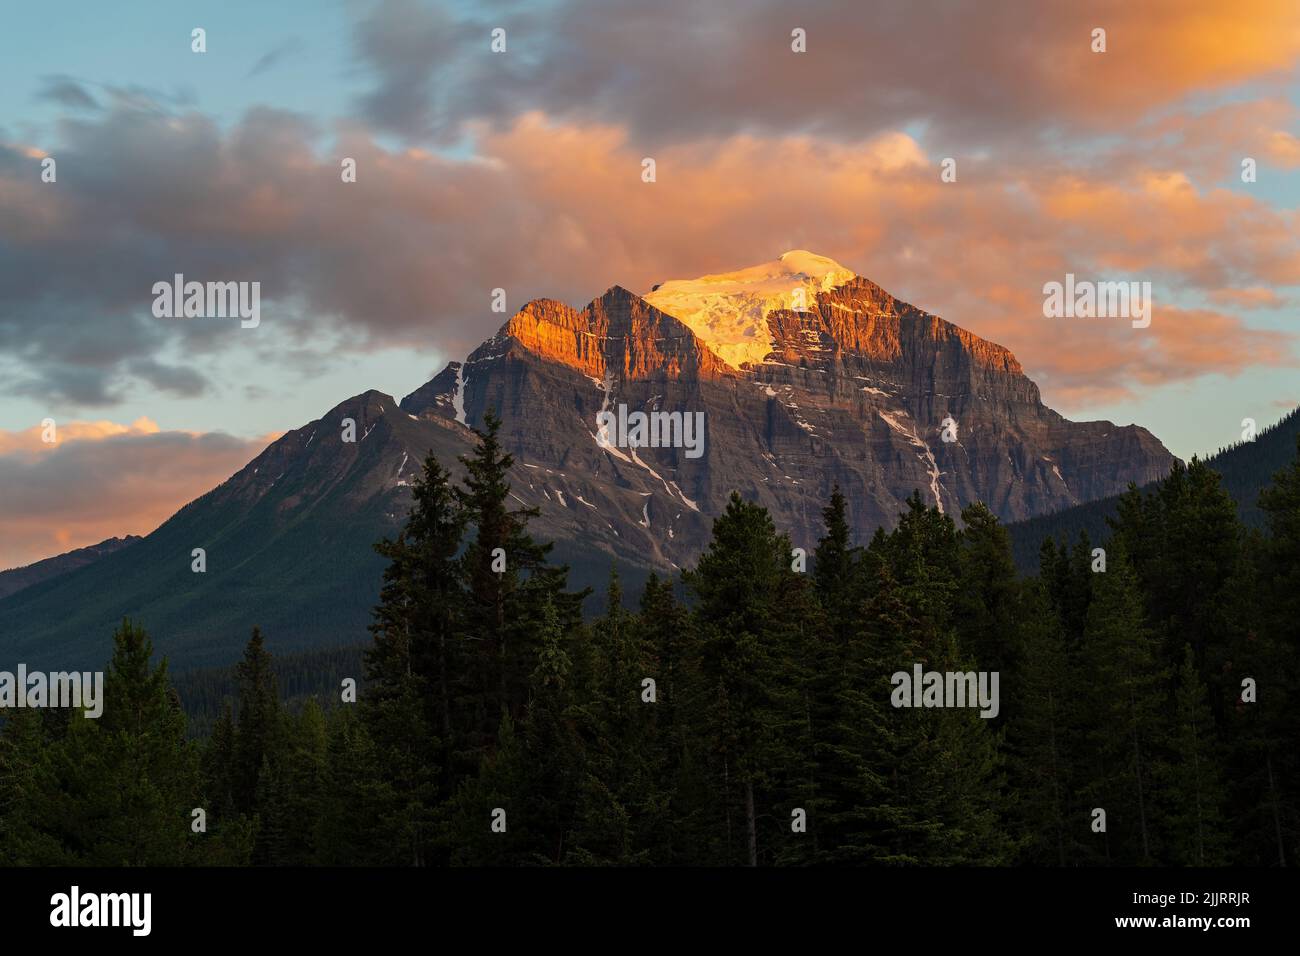 Pico de la montaña del templo al atardecer, parque nacional Banff, Alberta, Canadá. Foto de stock